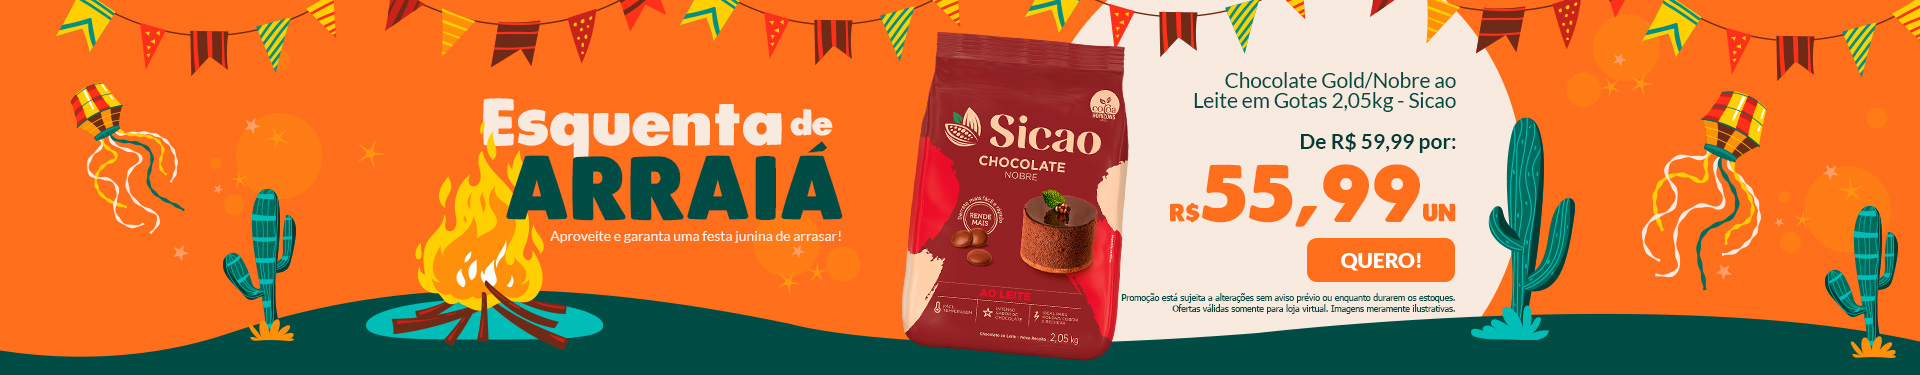 # SEMANA DO ARRAIA - CHOCOLATE NOBRE AO LEITE - GOTAS 2,05KG SICAO